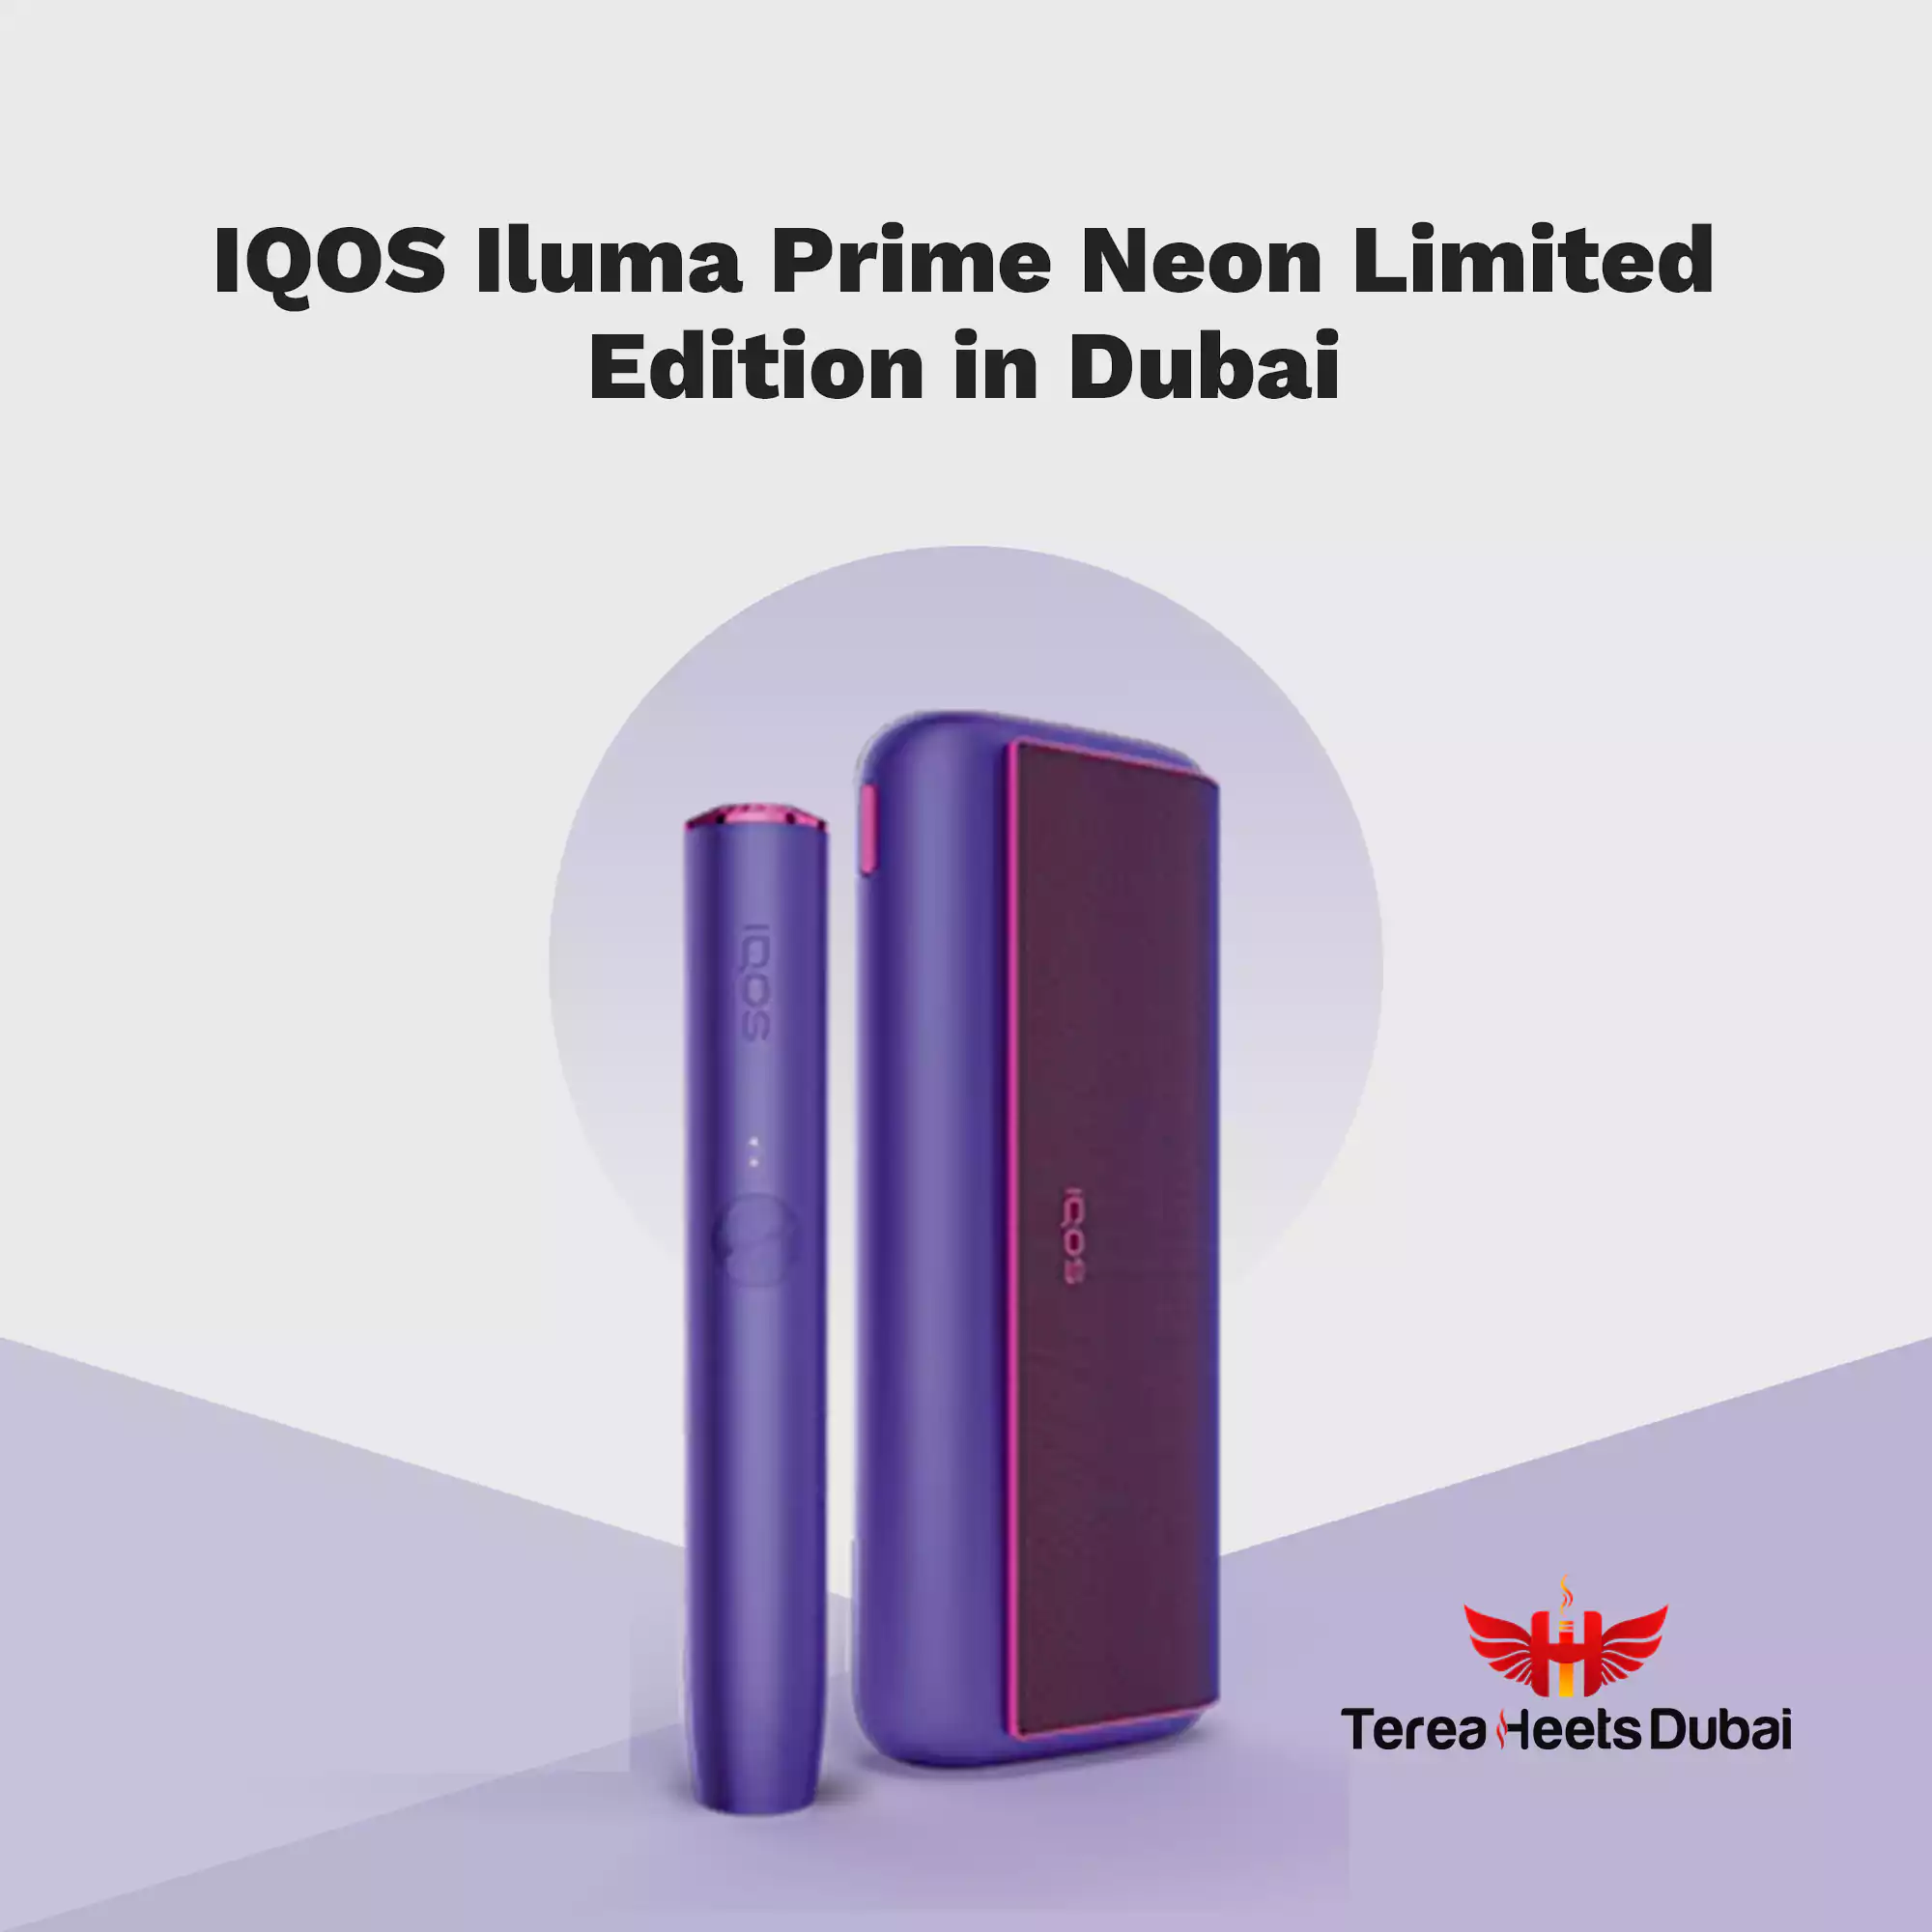 IQOS Iluma Prime Neon Limited Edition in Dubai